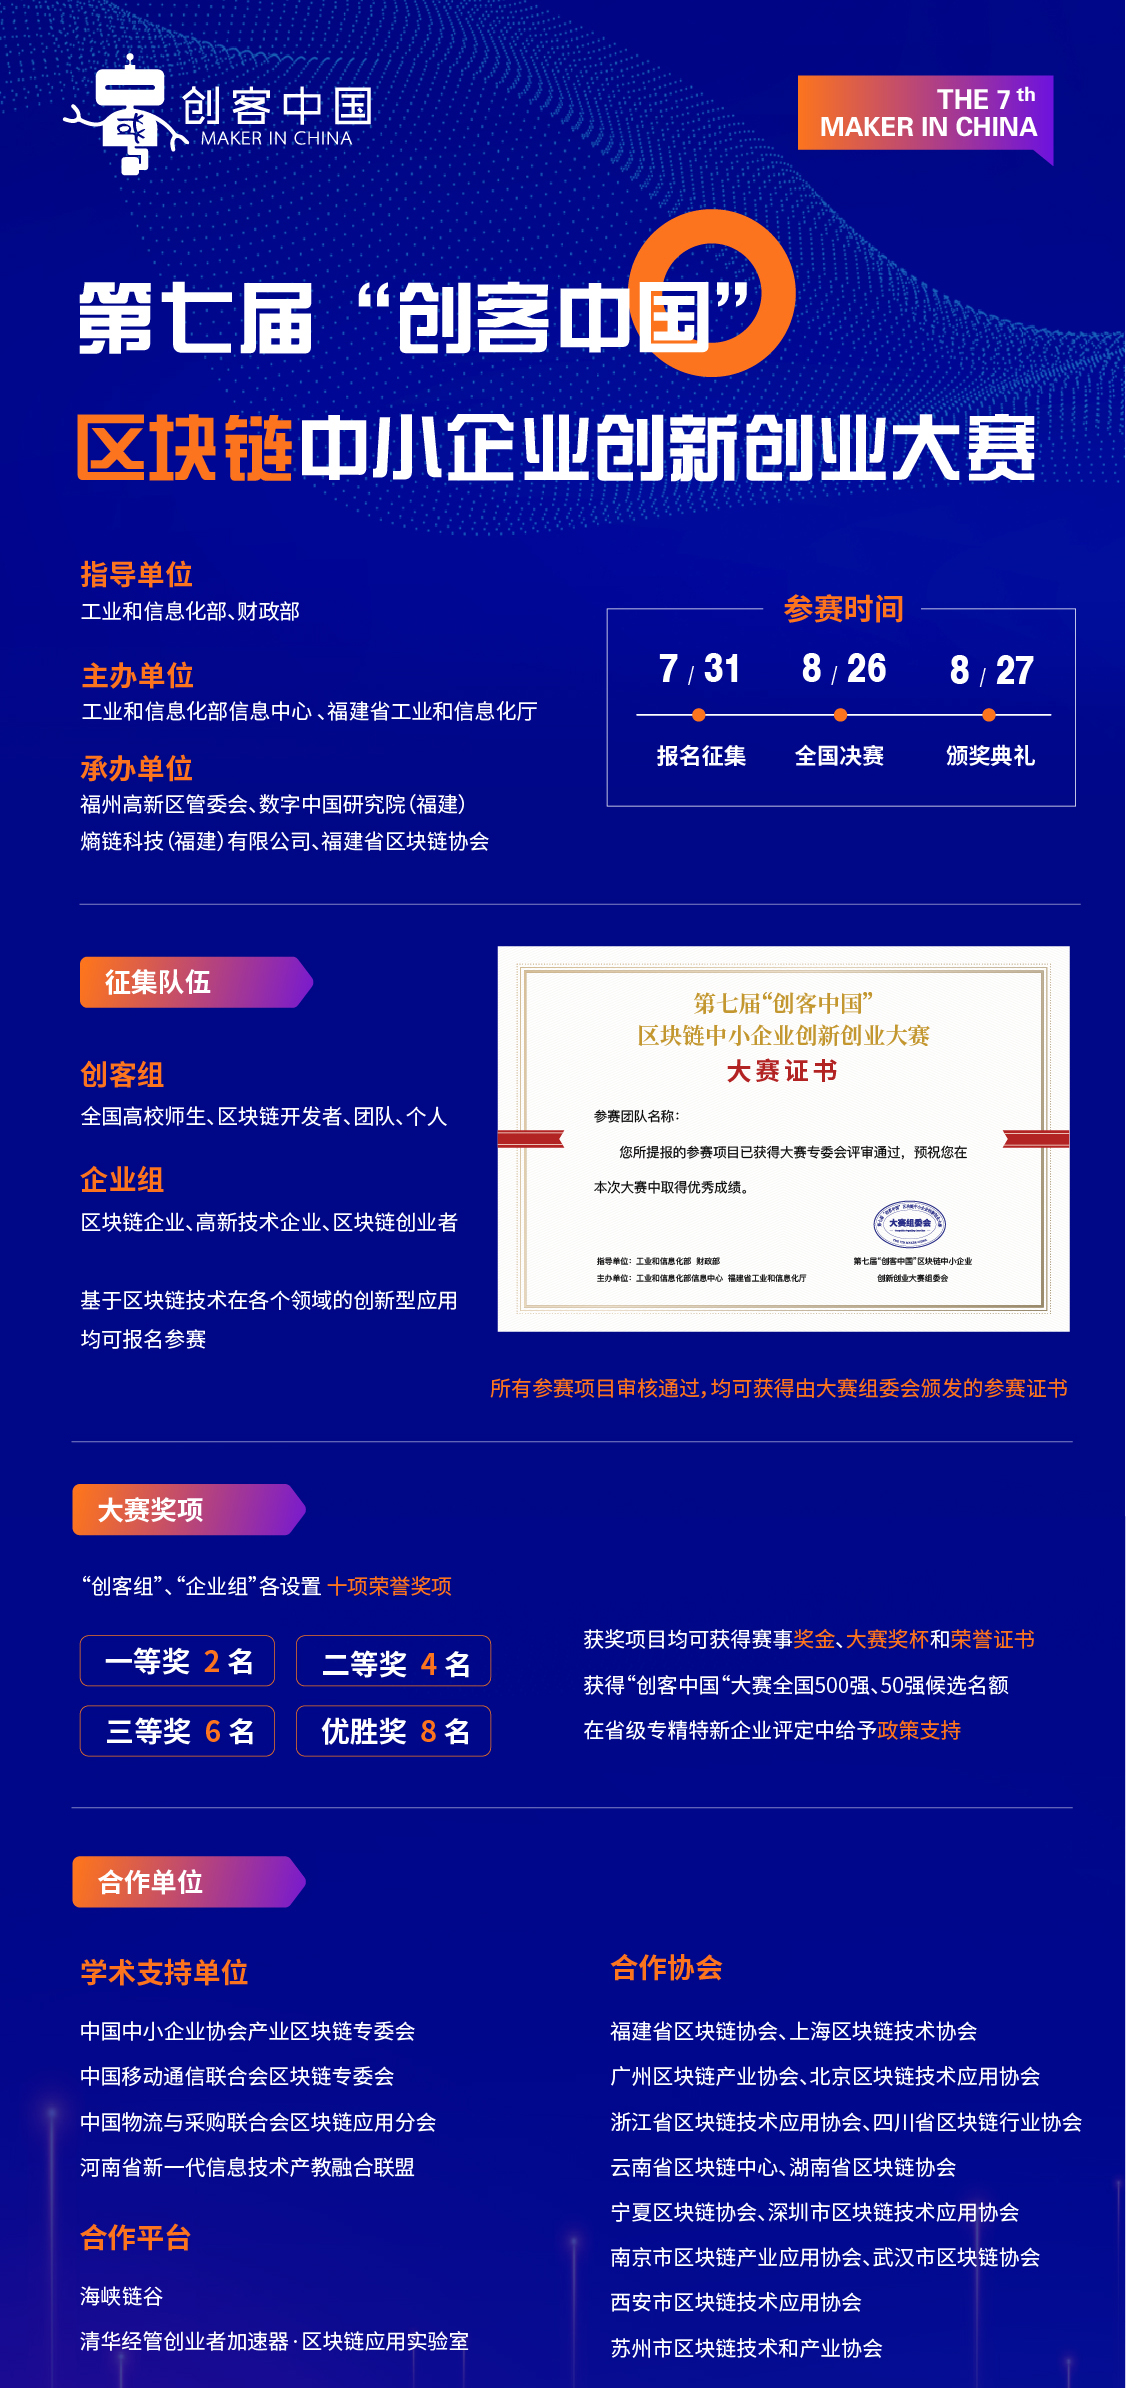 福建将举办“创客中国”大赛区块链中小企业创新创业大赛